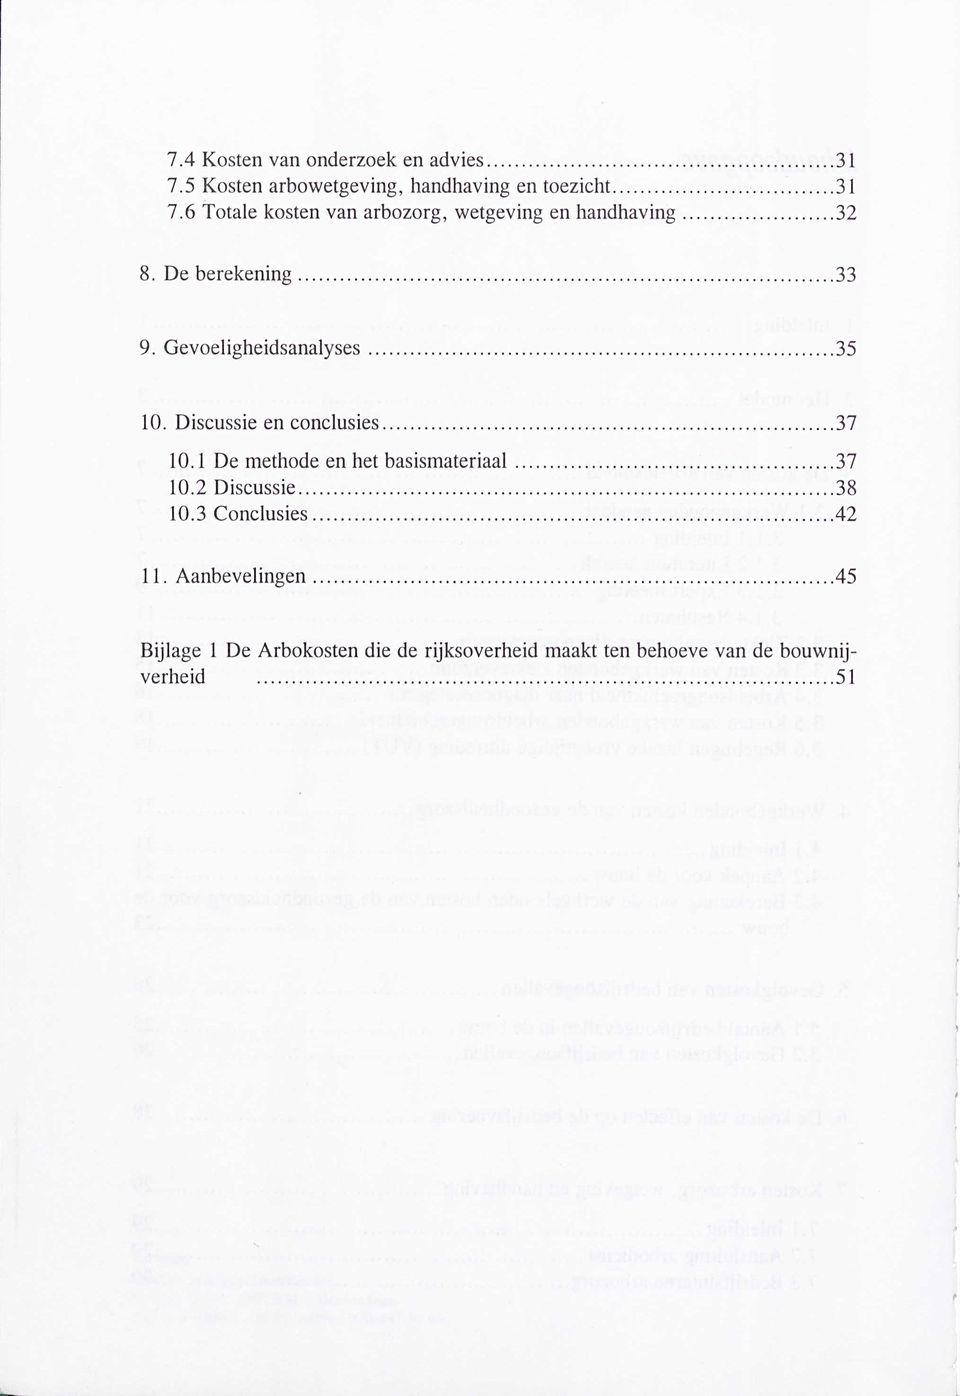 1 De methode en het basismateriaal 37 10.2 Discussie 38 10.3 Conclusies.42 11. Aanbevelingen.